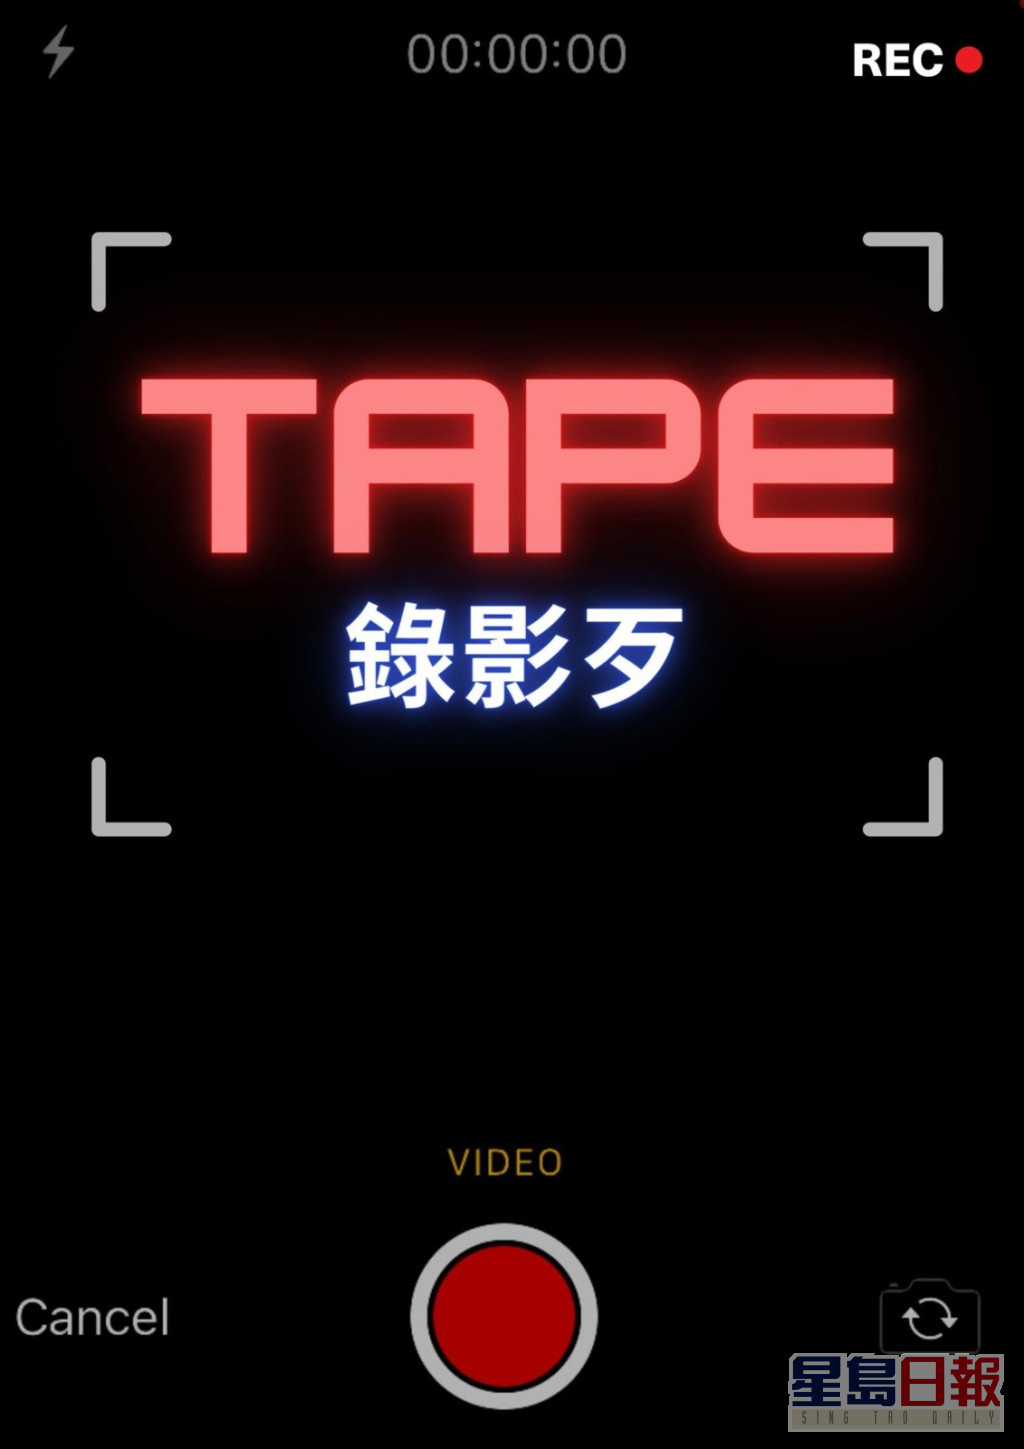 《Tape》将于9月在香港拍摄。